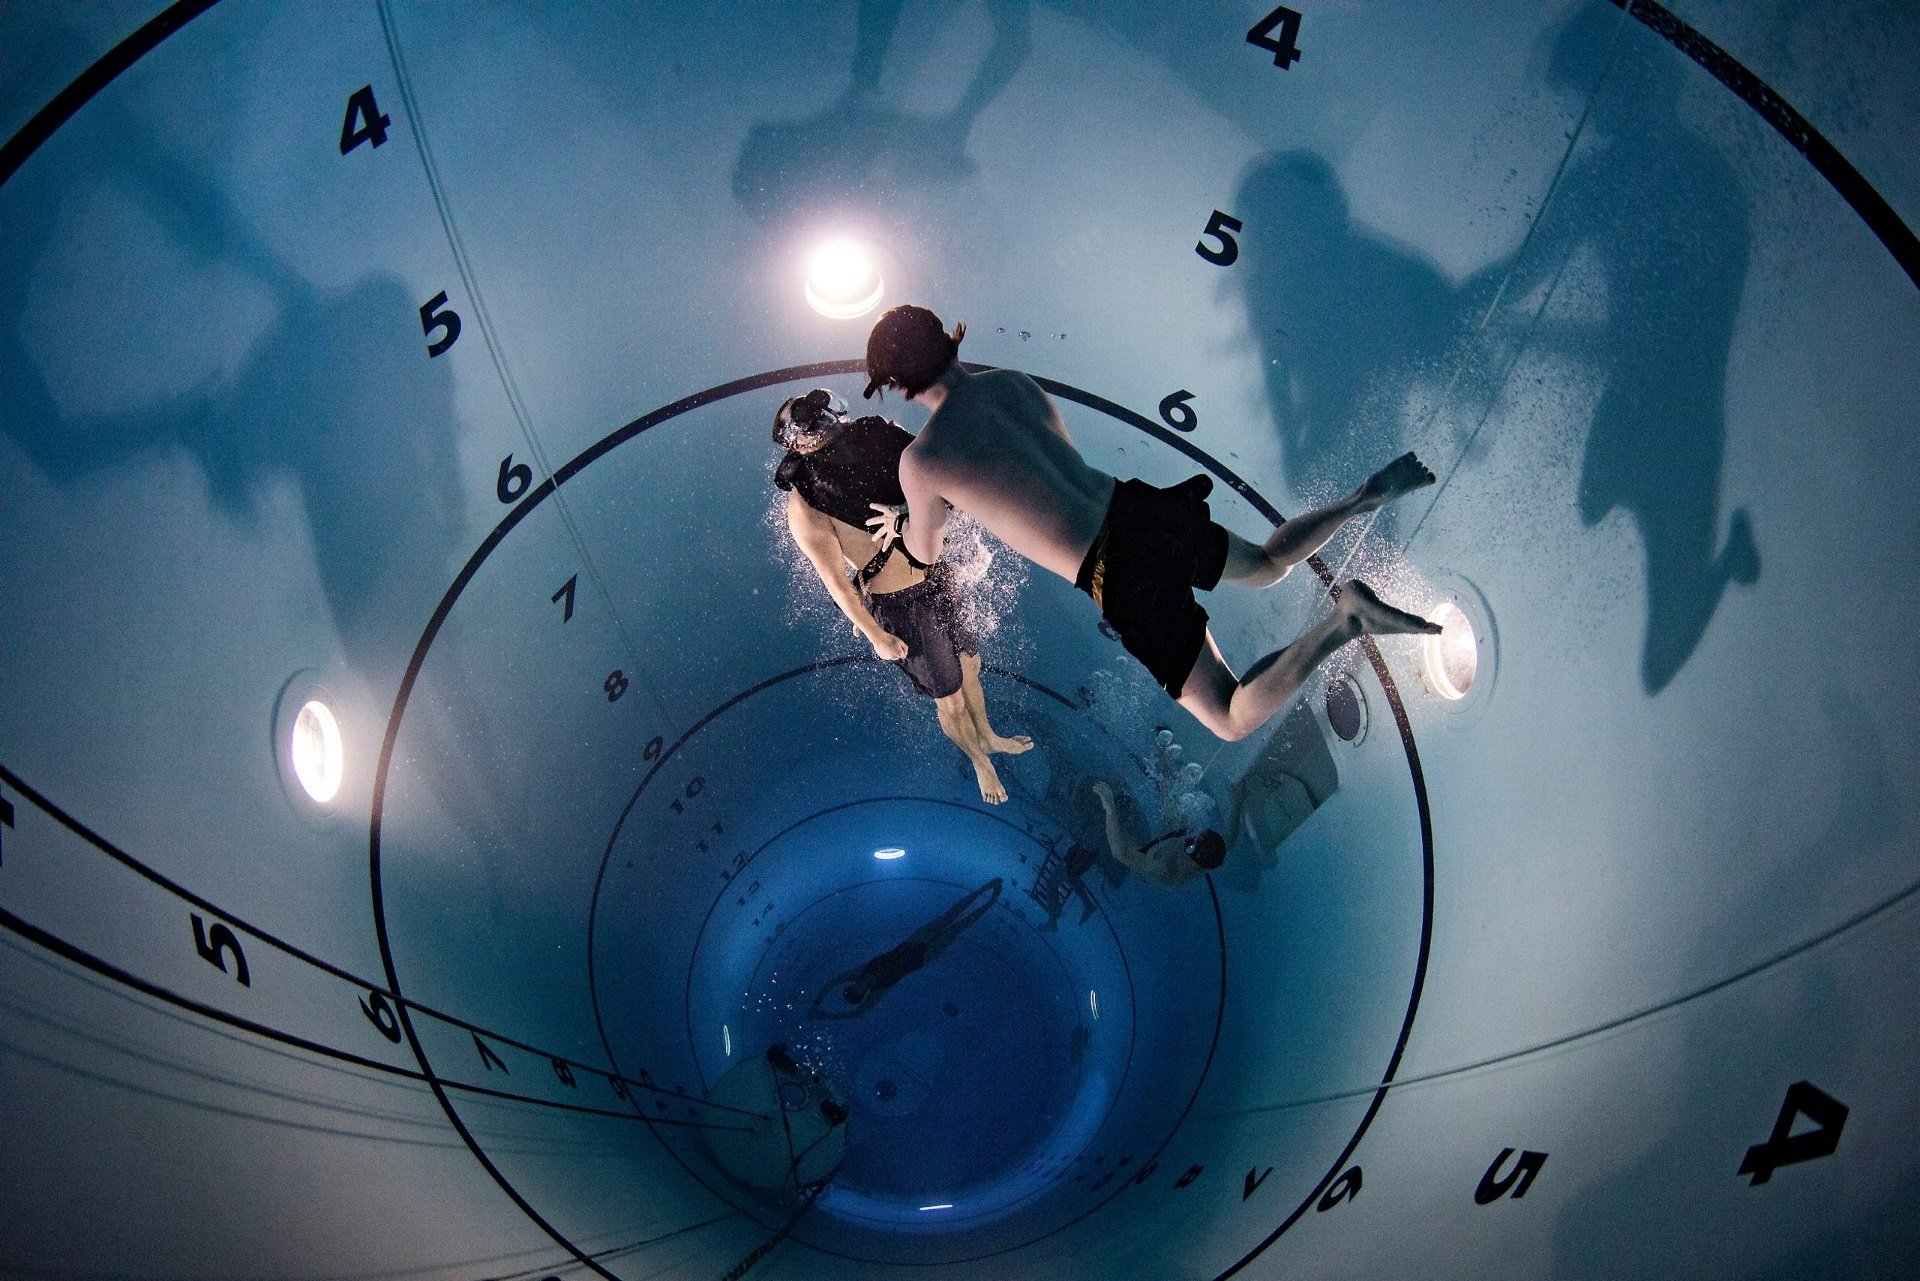 Skipsdykkeraspiranten blir møtt av en instruktør som geleider ham opp de siste meterne til overflaten. På både ti meter og 18 meter har andre instruktører i tanken luftlommer der de oppholder seg mellom hver aspirants oppstigning. Tanken ble utviklet for undervannstrening i kontrollerte omgivelser.